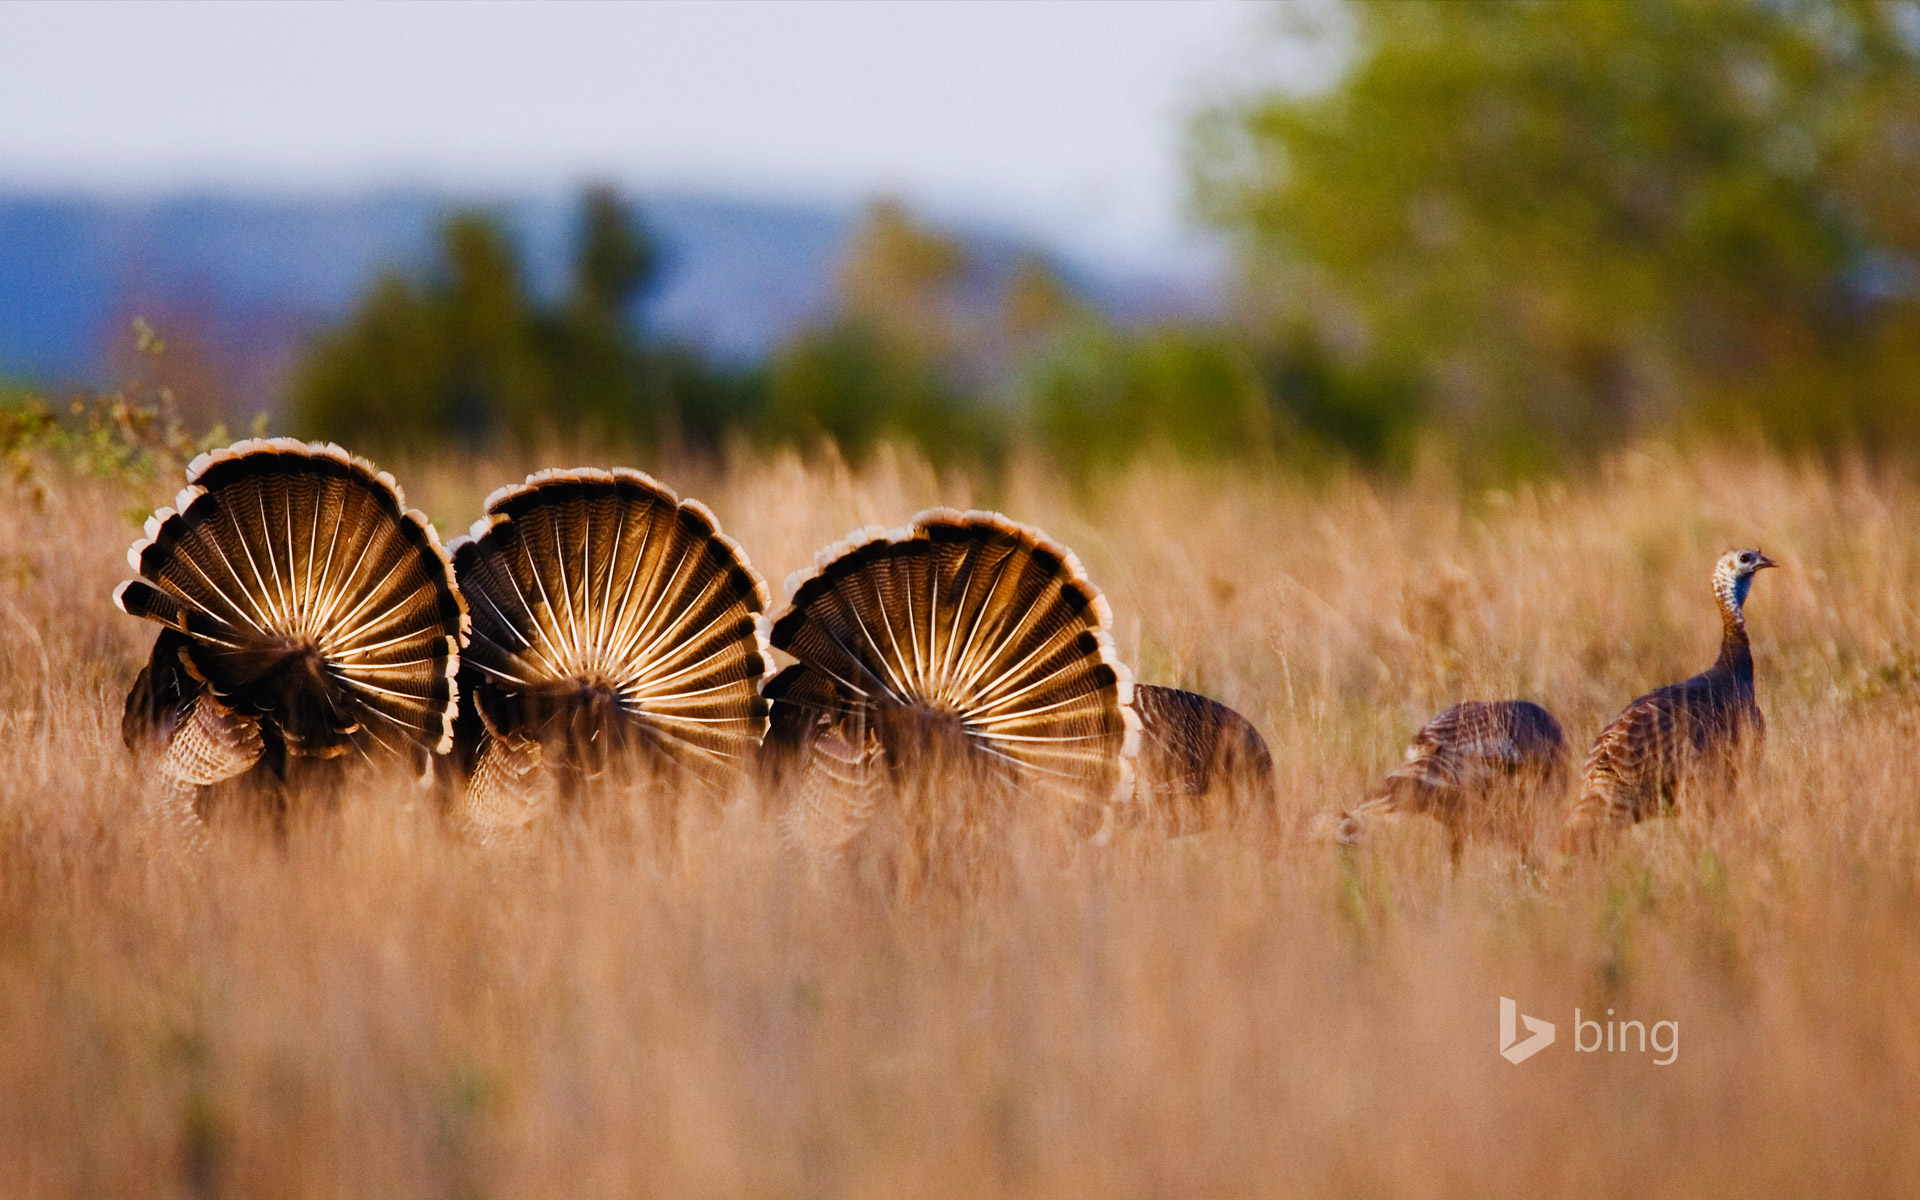 Wild turkeys in Rio Grande, Texas